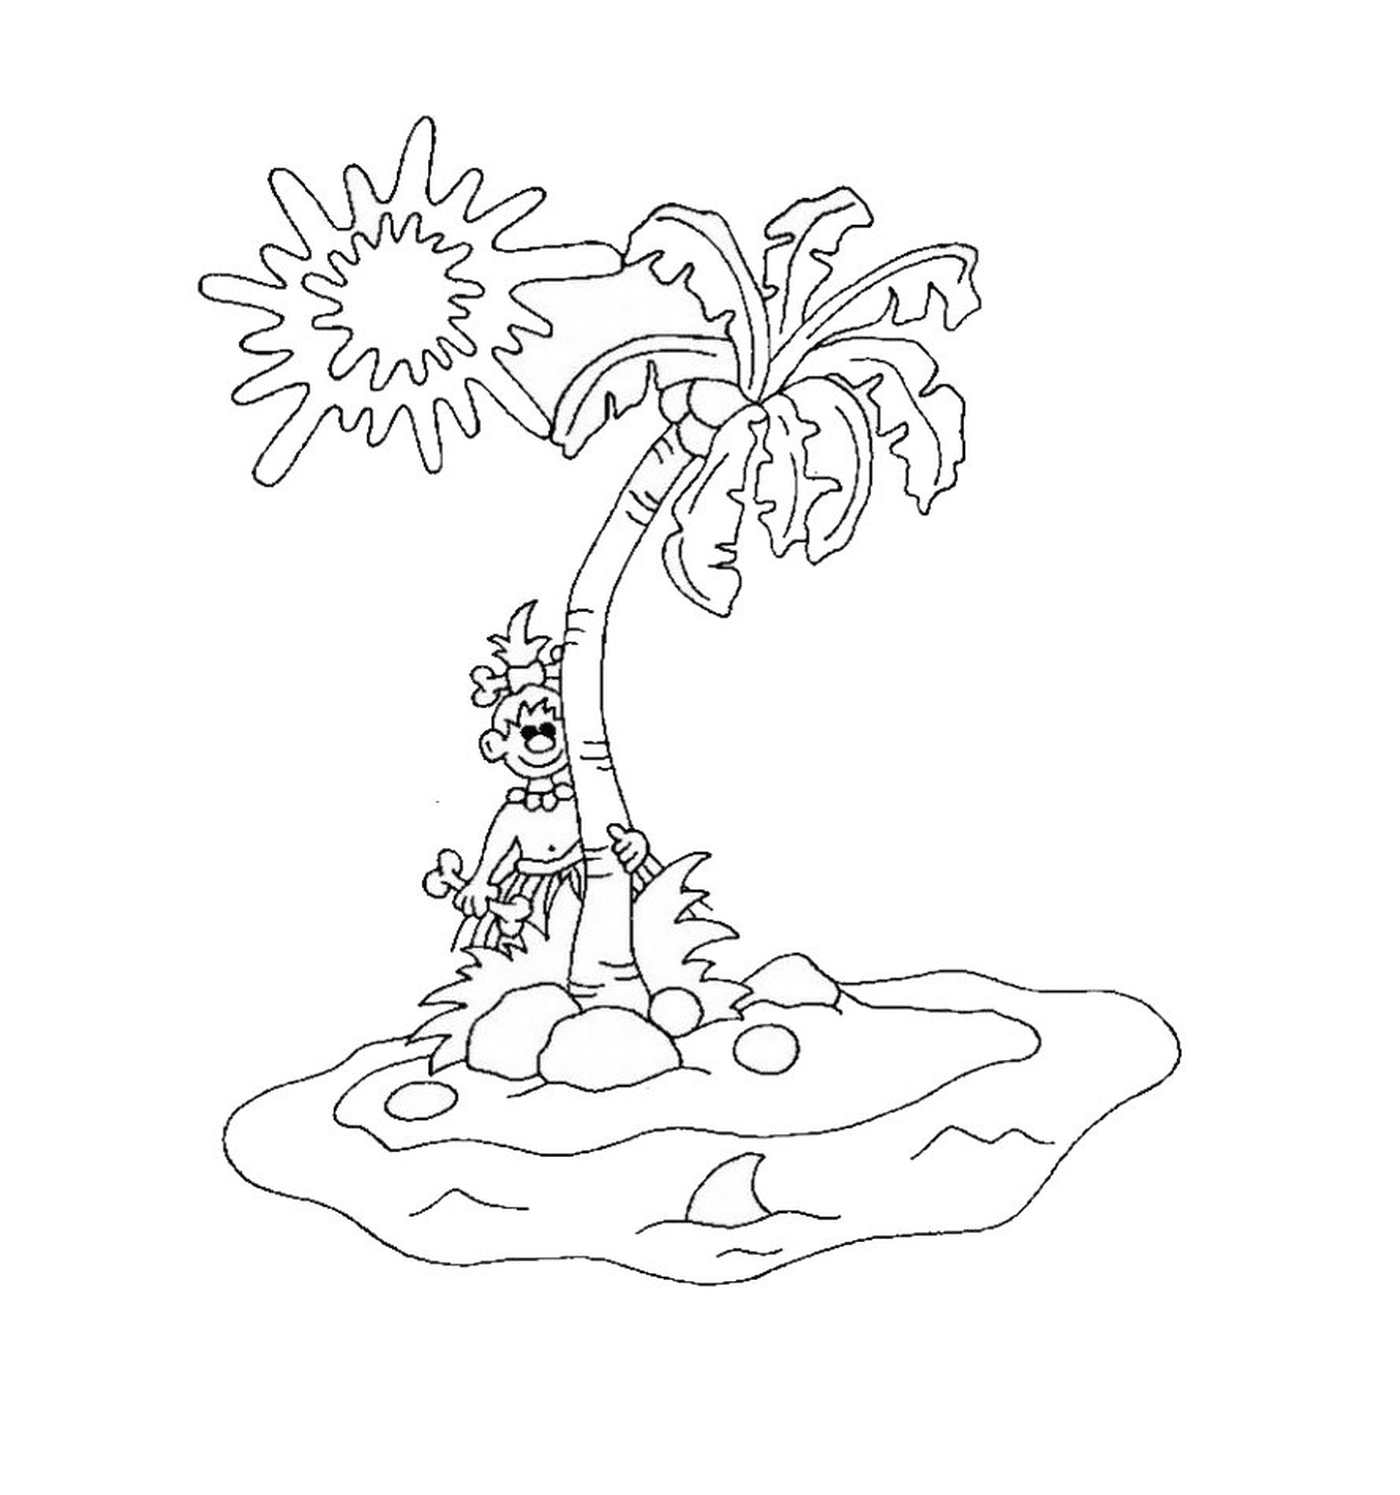  شجرة في جزيرة مهجورة 